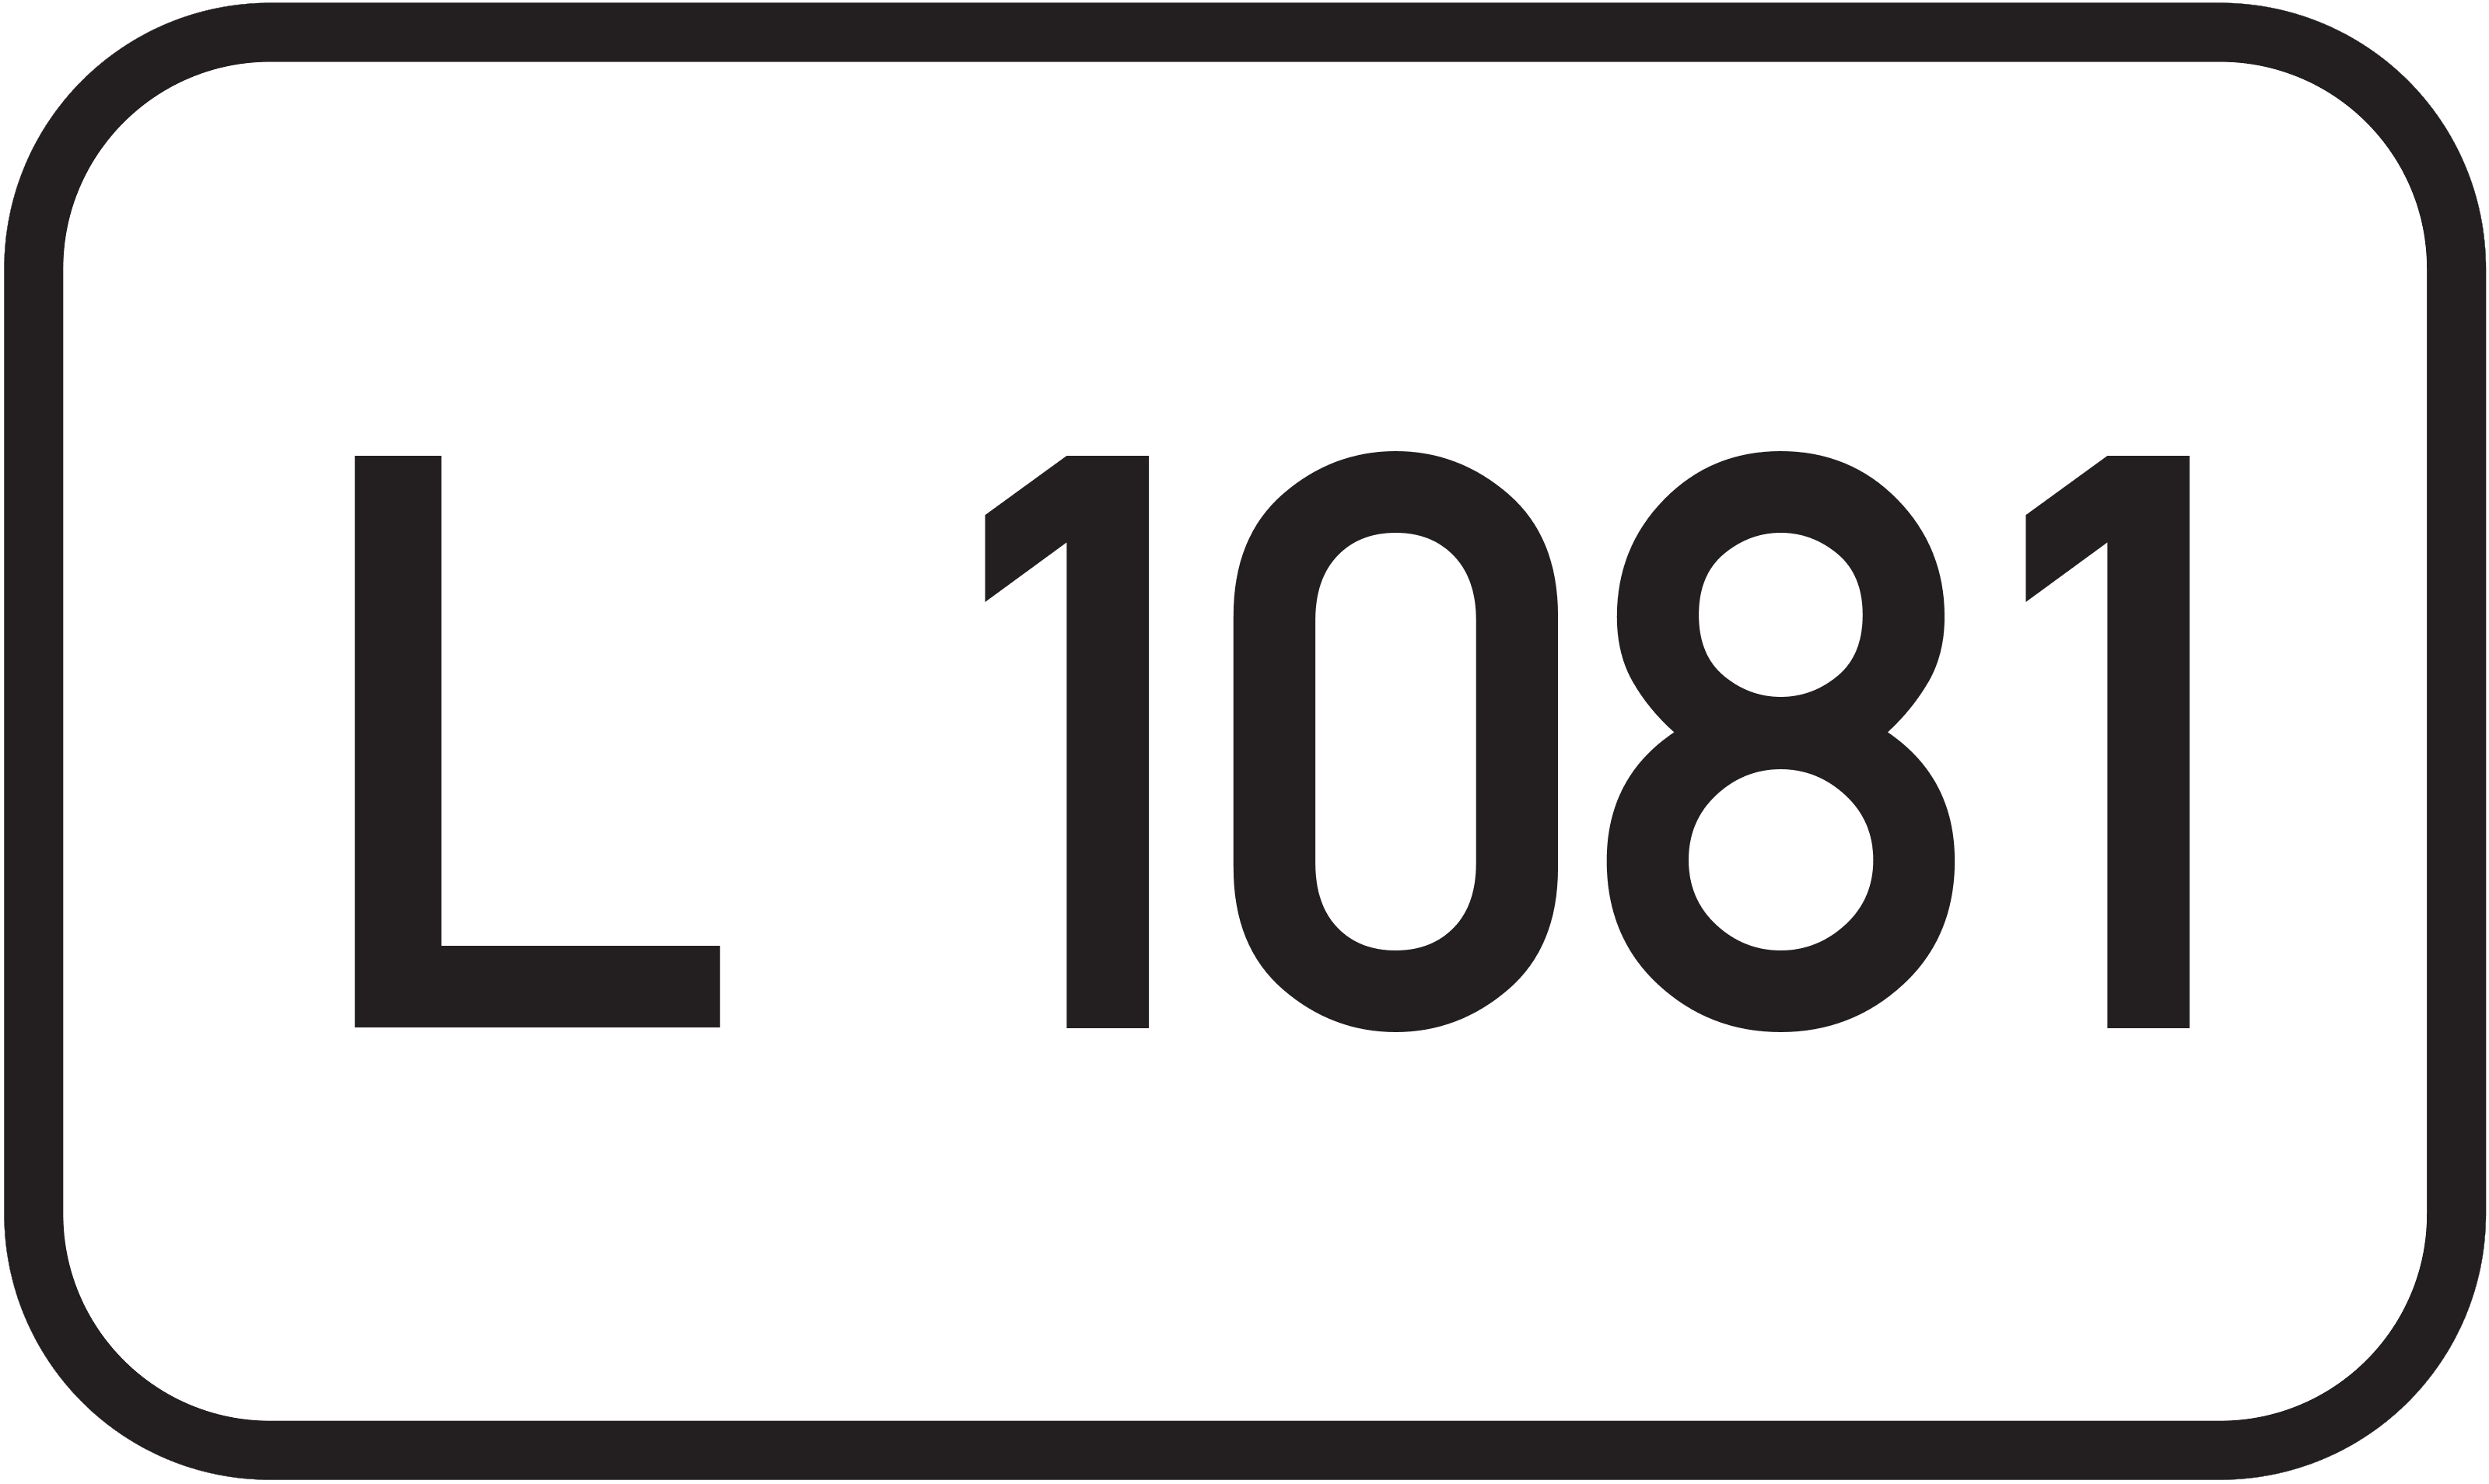 Landesstraße L 1081